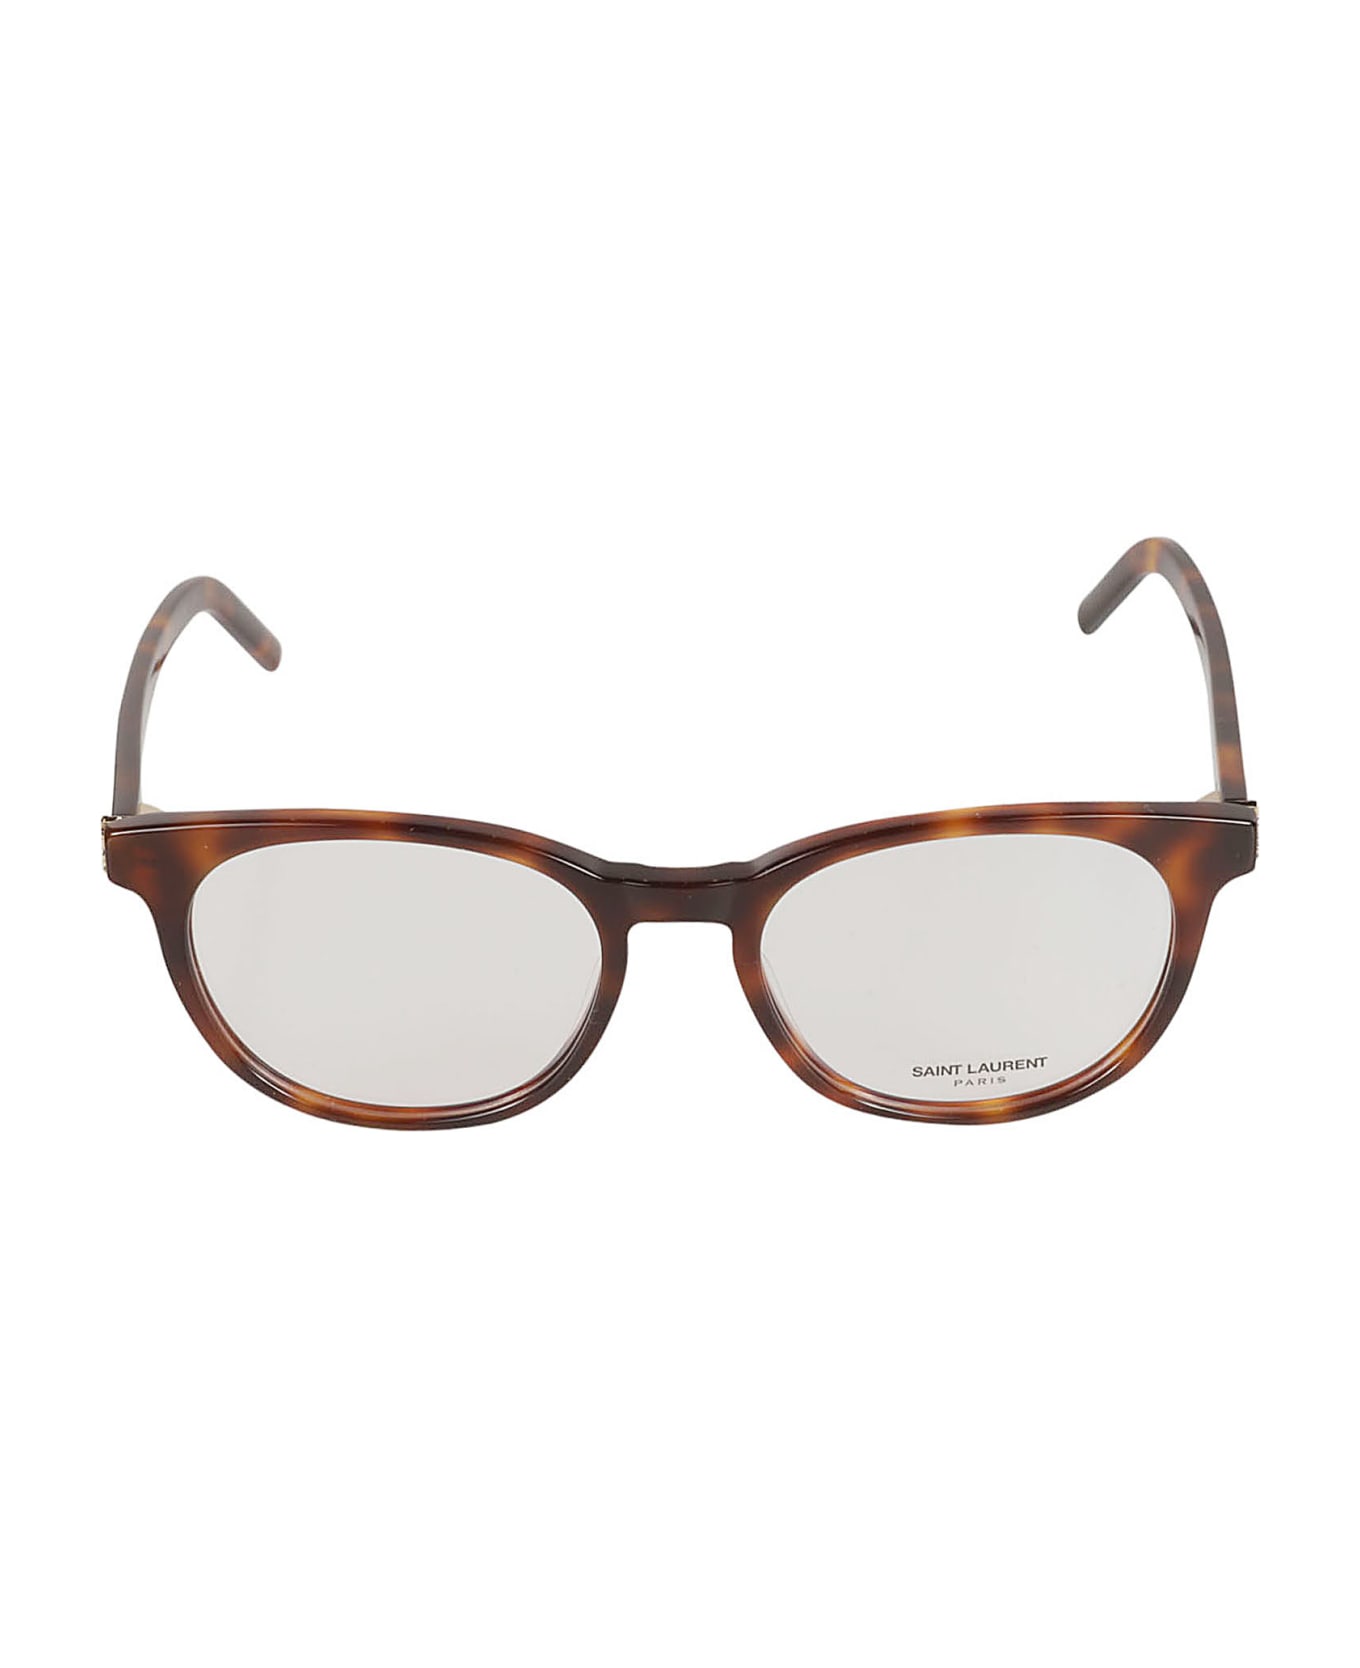 Saint Laurent Eyewear Ysl Hinge Oval Frame Glasses - Havana/Transparent アイウェア